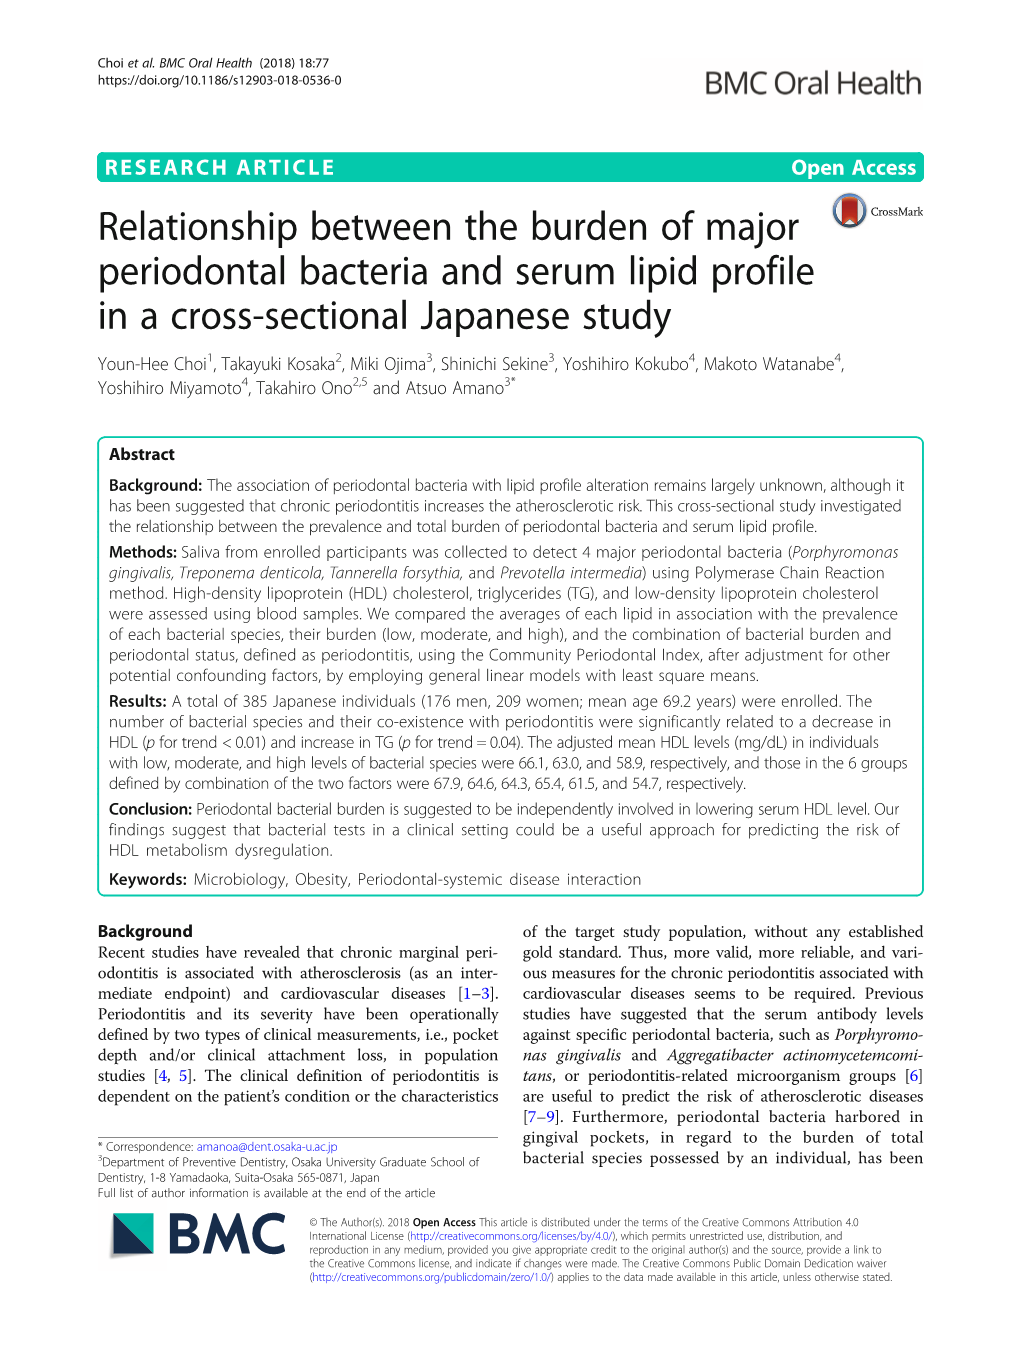 Relationship Between the Burden of Major Periodontal Bacteria And